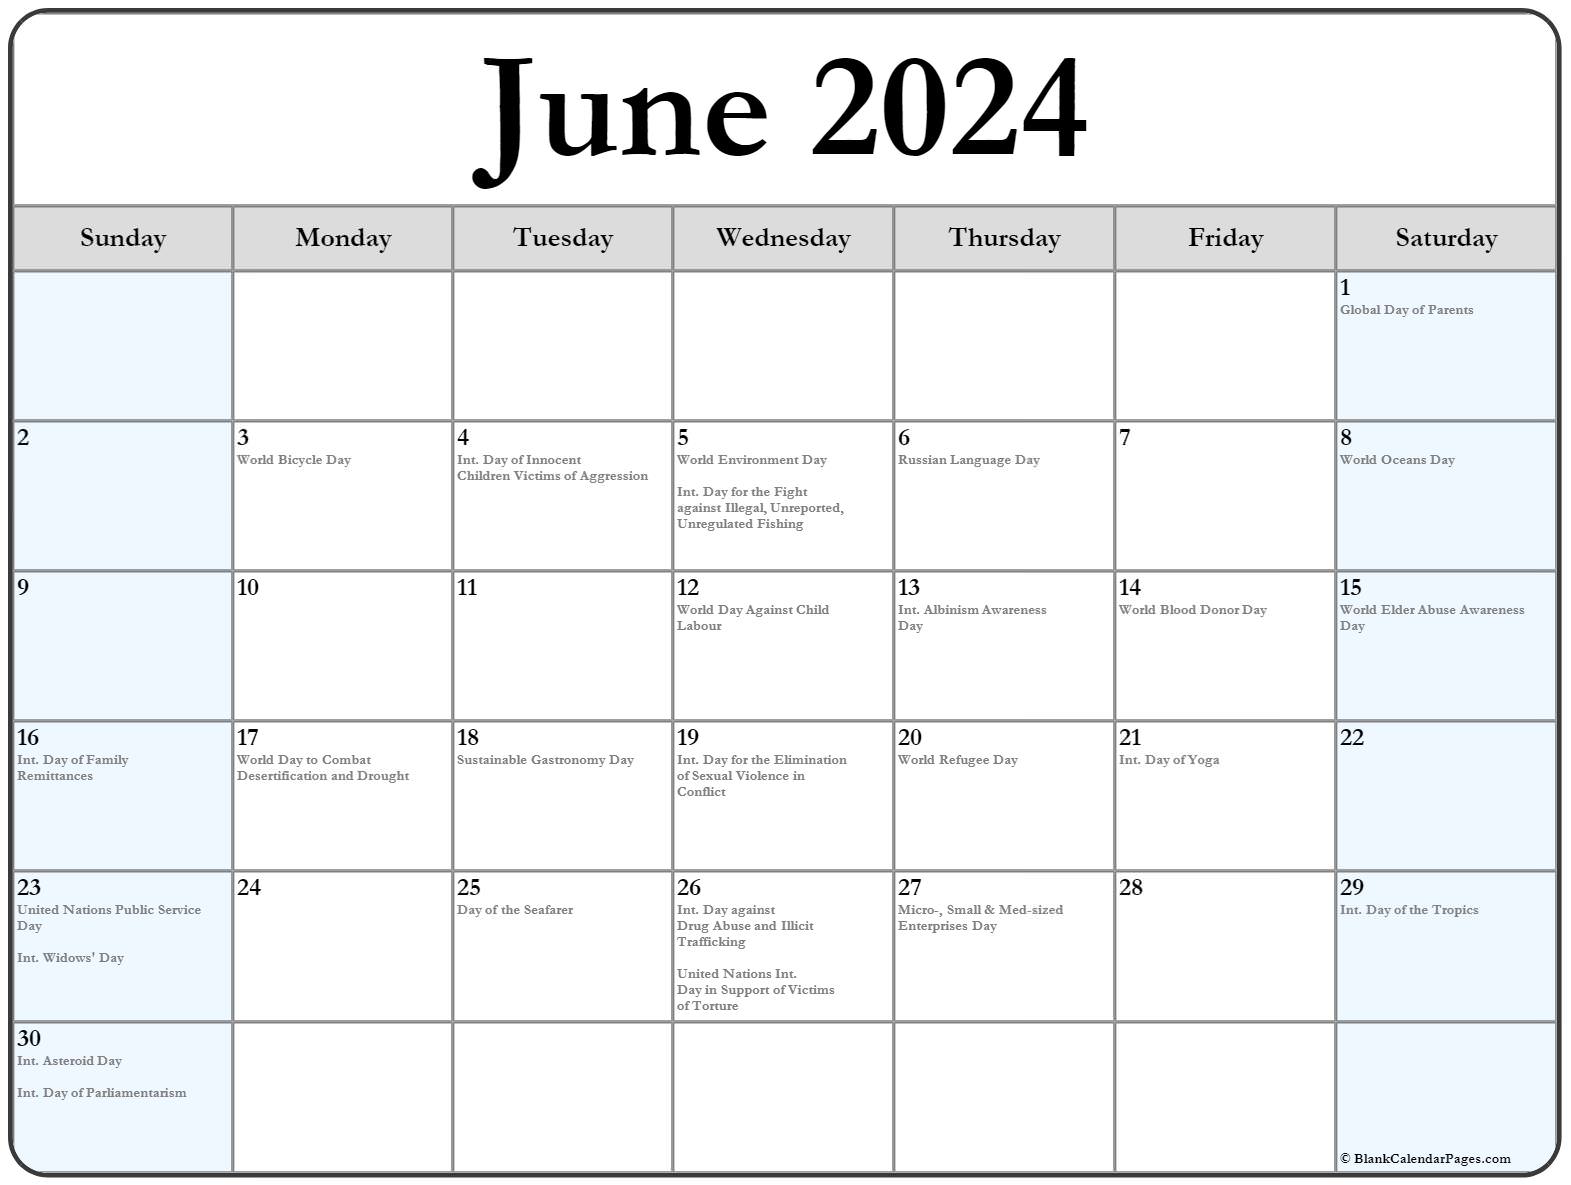 June Calendar 2024 With Holidays Calendar Quickly - Bank2home.com